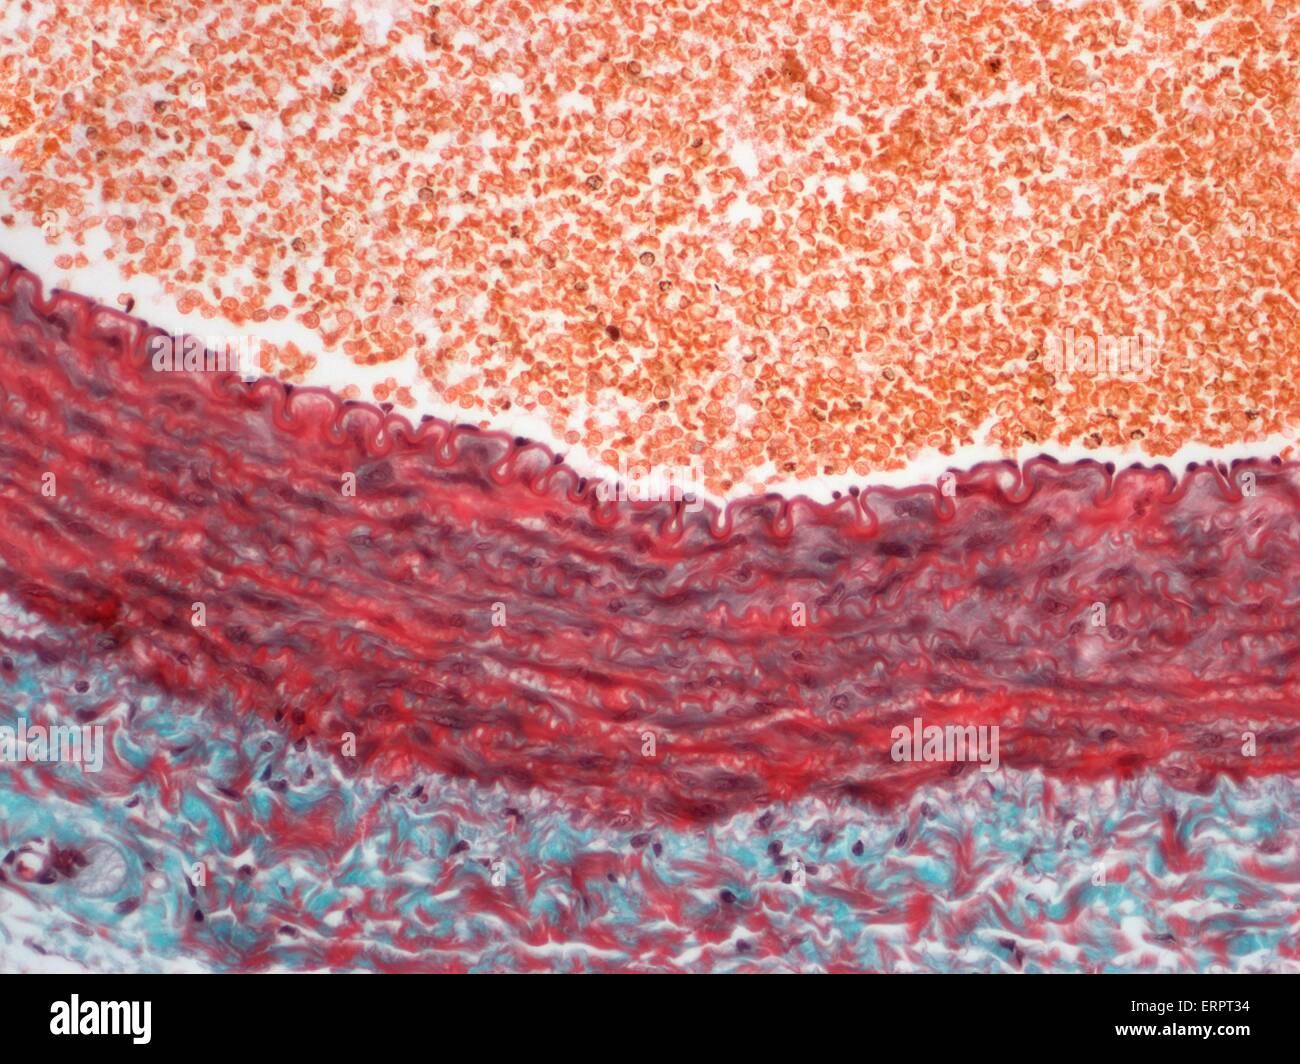 Arterie. Leichte Schliffbild eines Abschnitts einer muskulären Arterie. Dies ist die häufigste Form unter den Arterien. Ab innerste die Arterienwand entsteht durch eine interne elastische Schicht/Lamina (Bestandteil der Tunica Intima), eine breite glatte Muskelschicht (Tunica Media Stockfoto